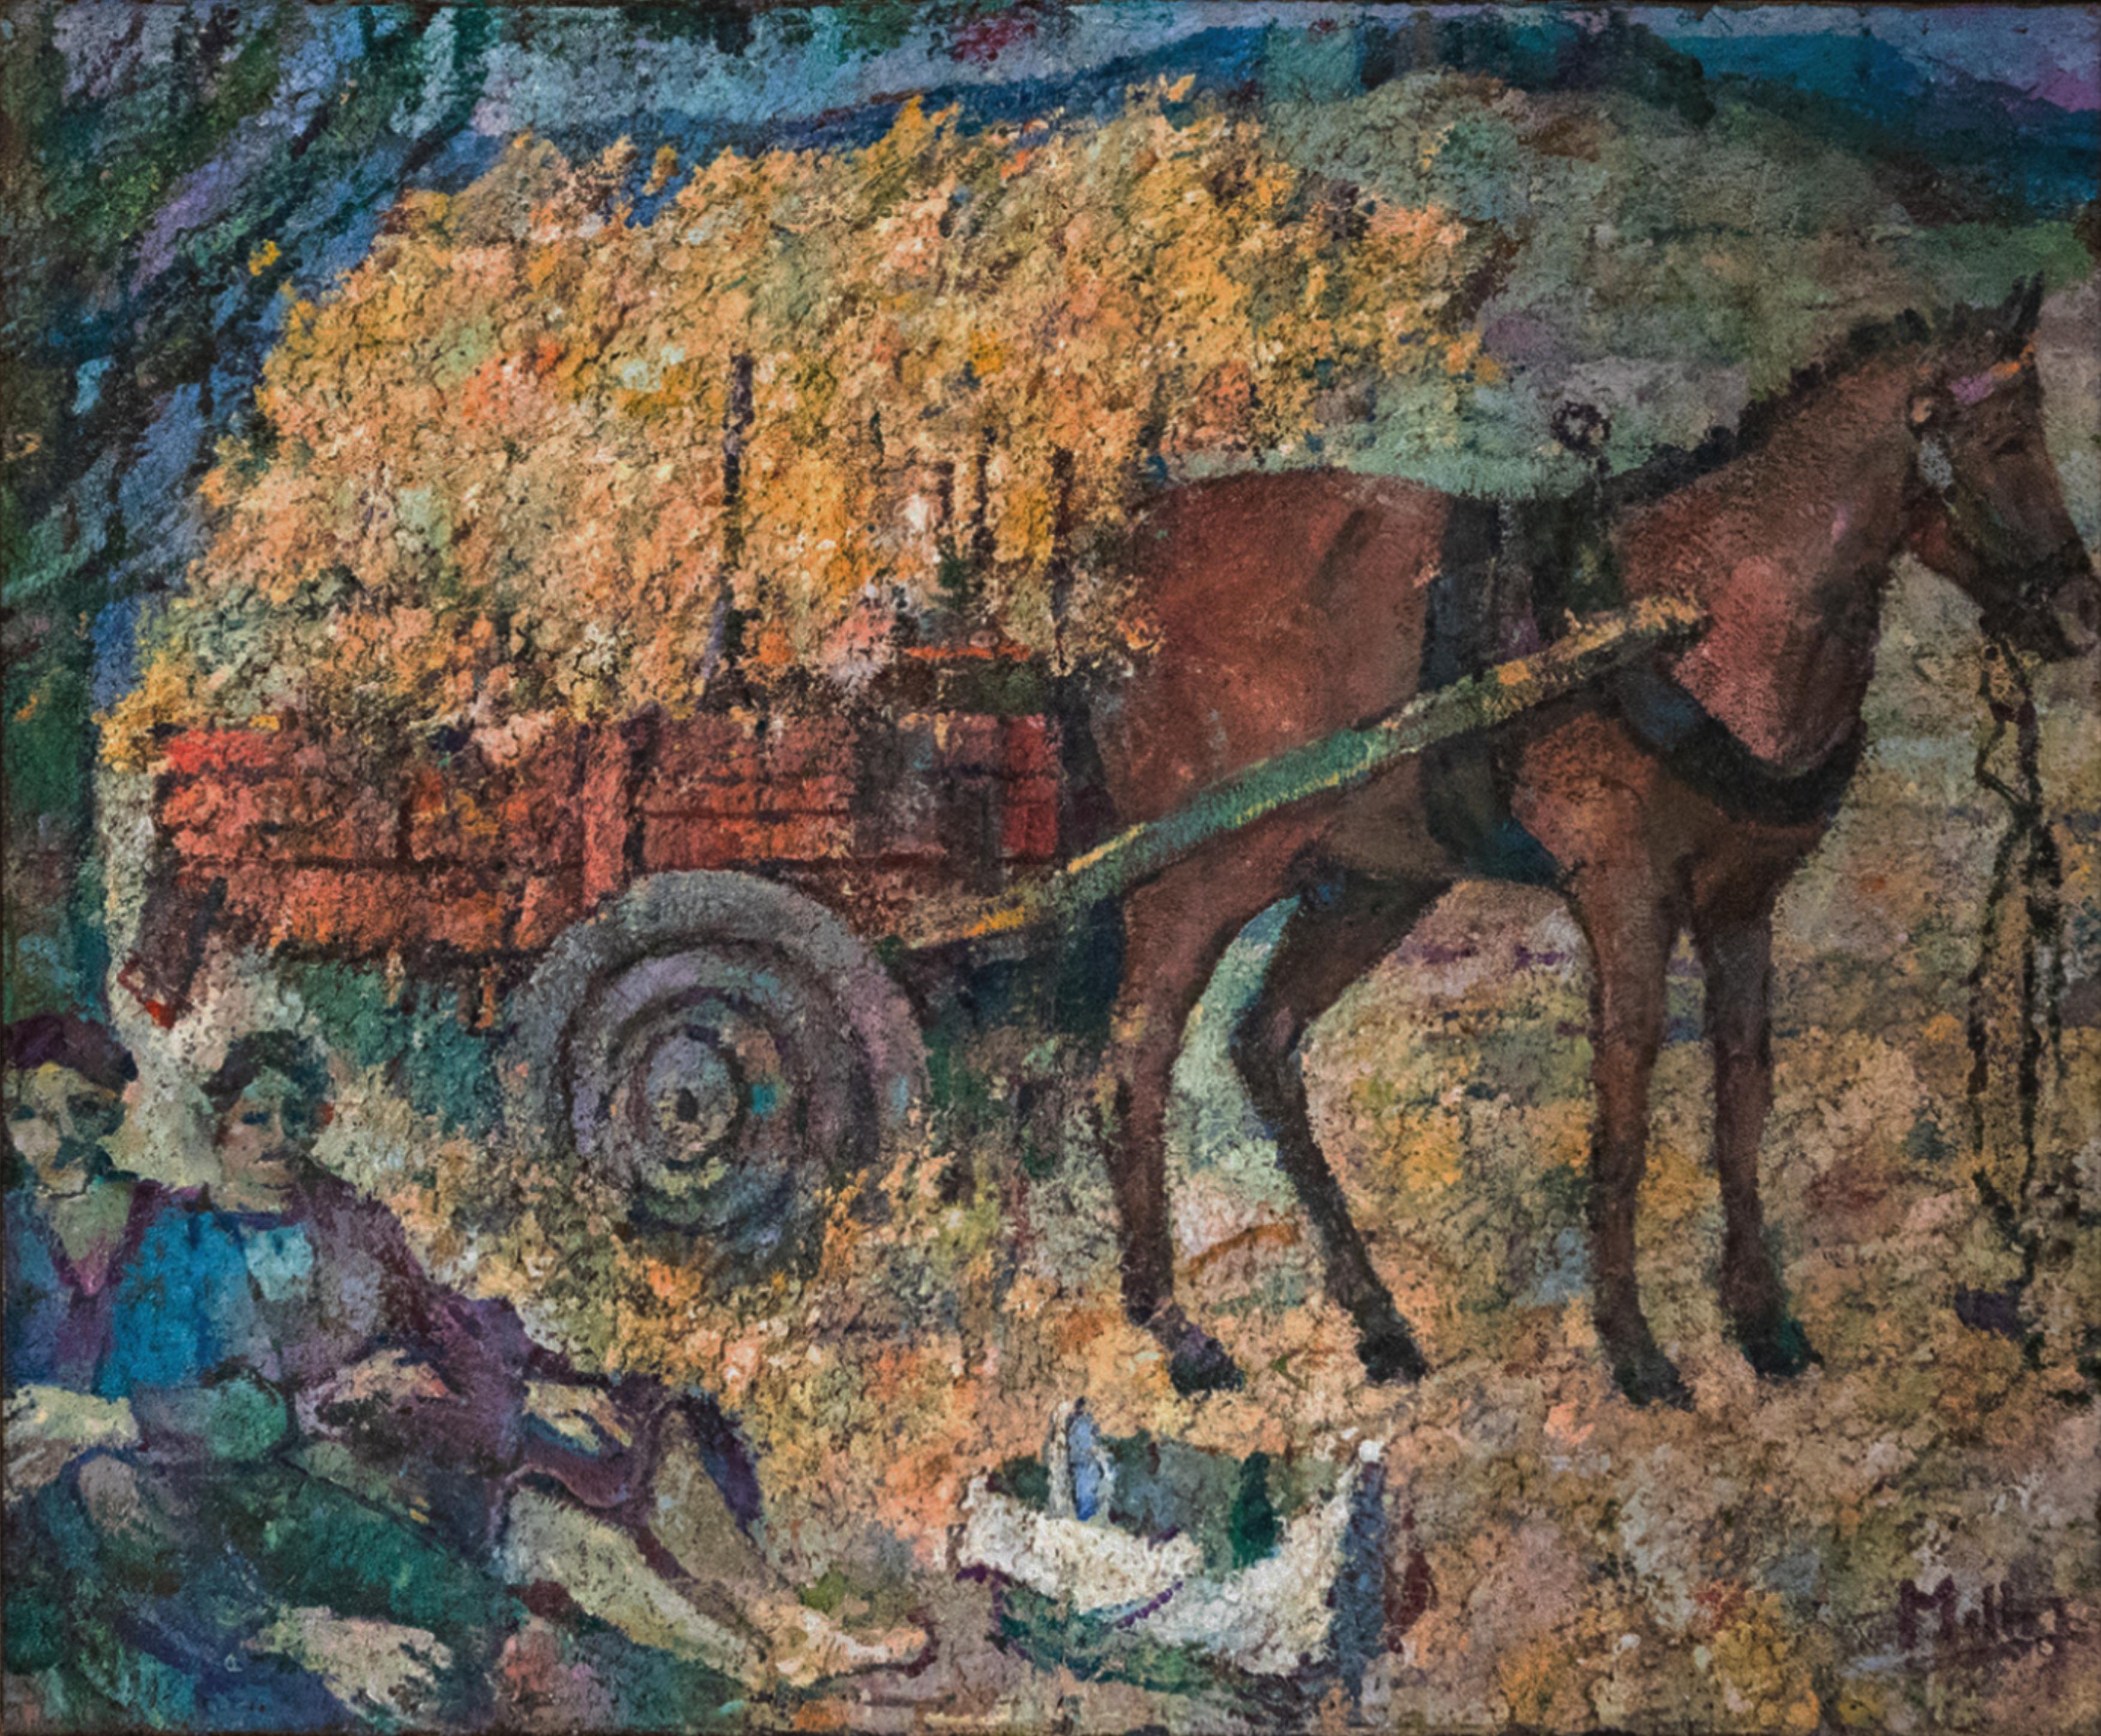 Ein pointillistisches Gemälde einer friedlichen ländlichen Szene mit einem mit Heu gefüllten Wagen, signiert von dem portugiesischen modernistischen Maler Agostinho de Mello Júnior, auch bekannt als Mello Junior.

Agostinho de Mello Júnior (1914 bis